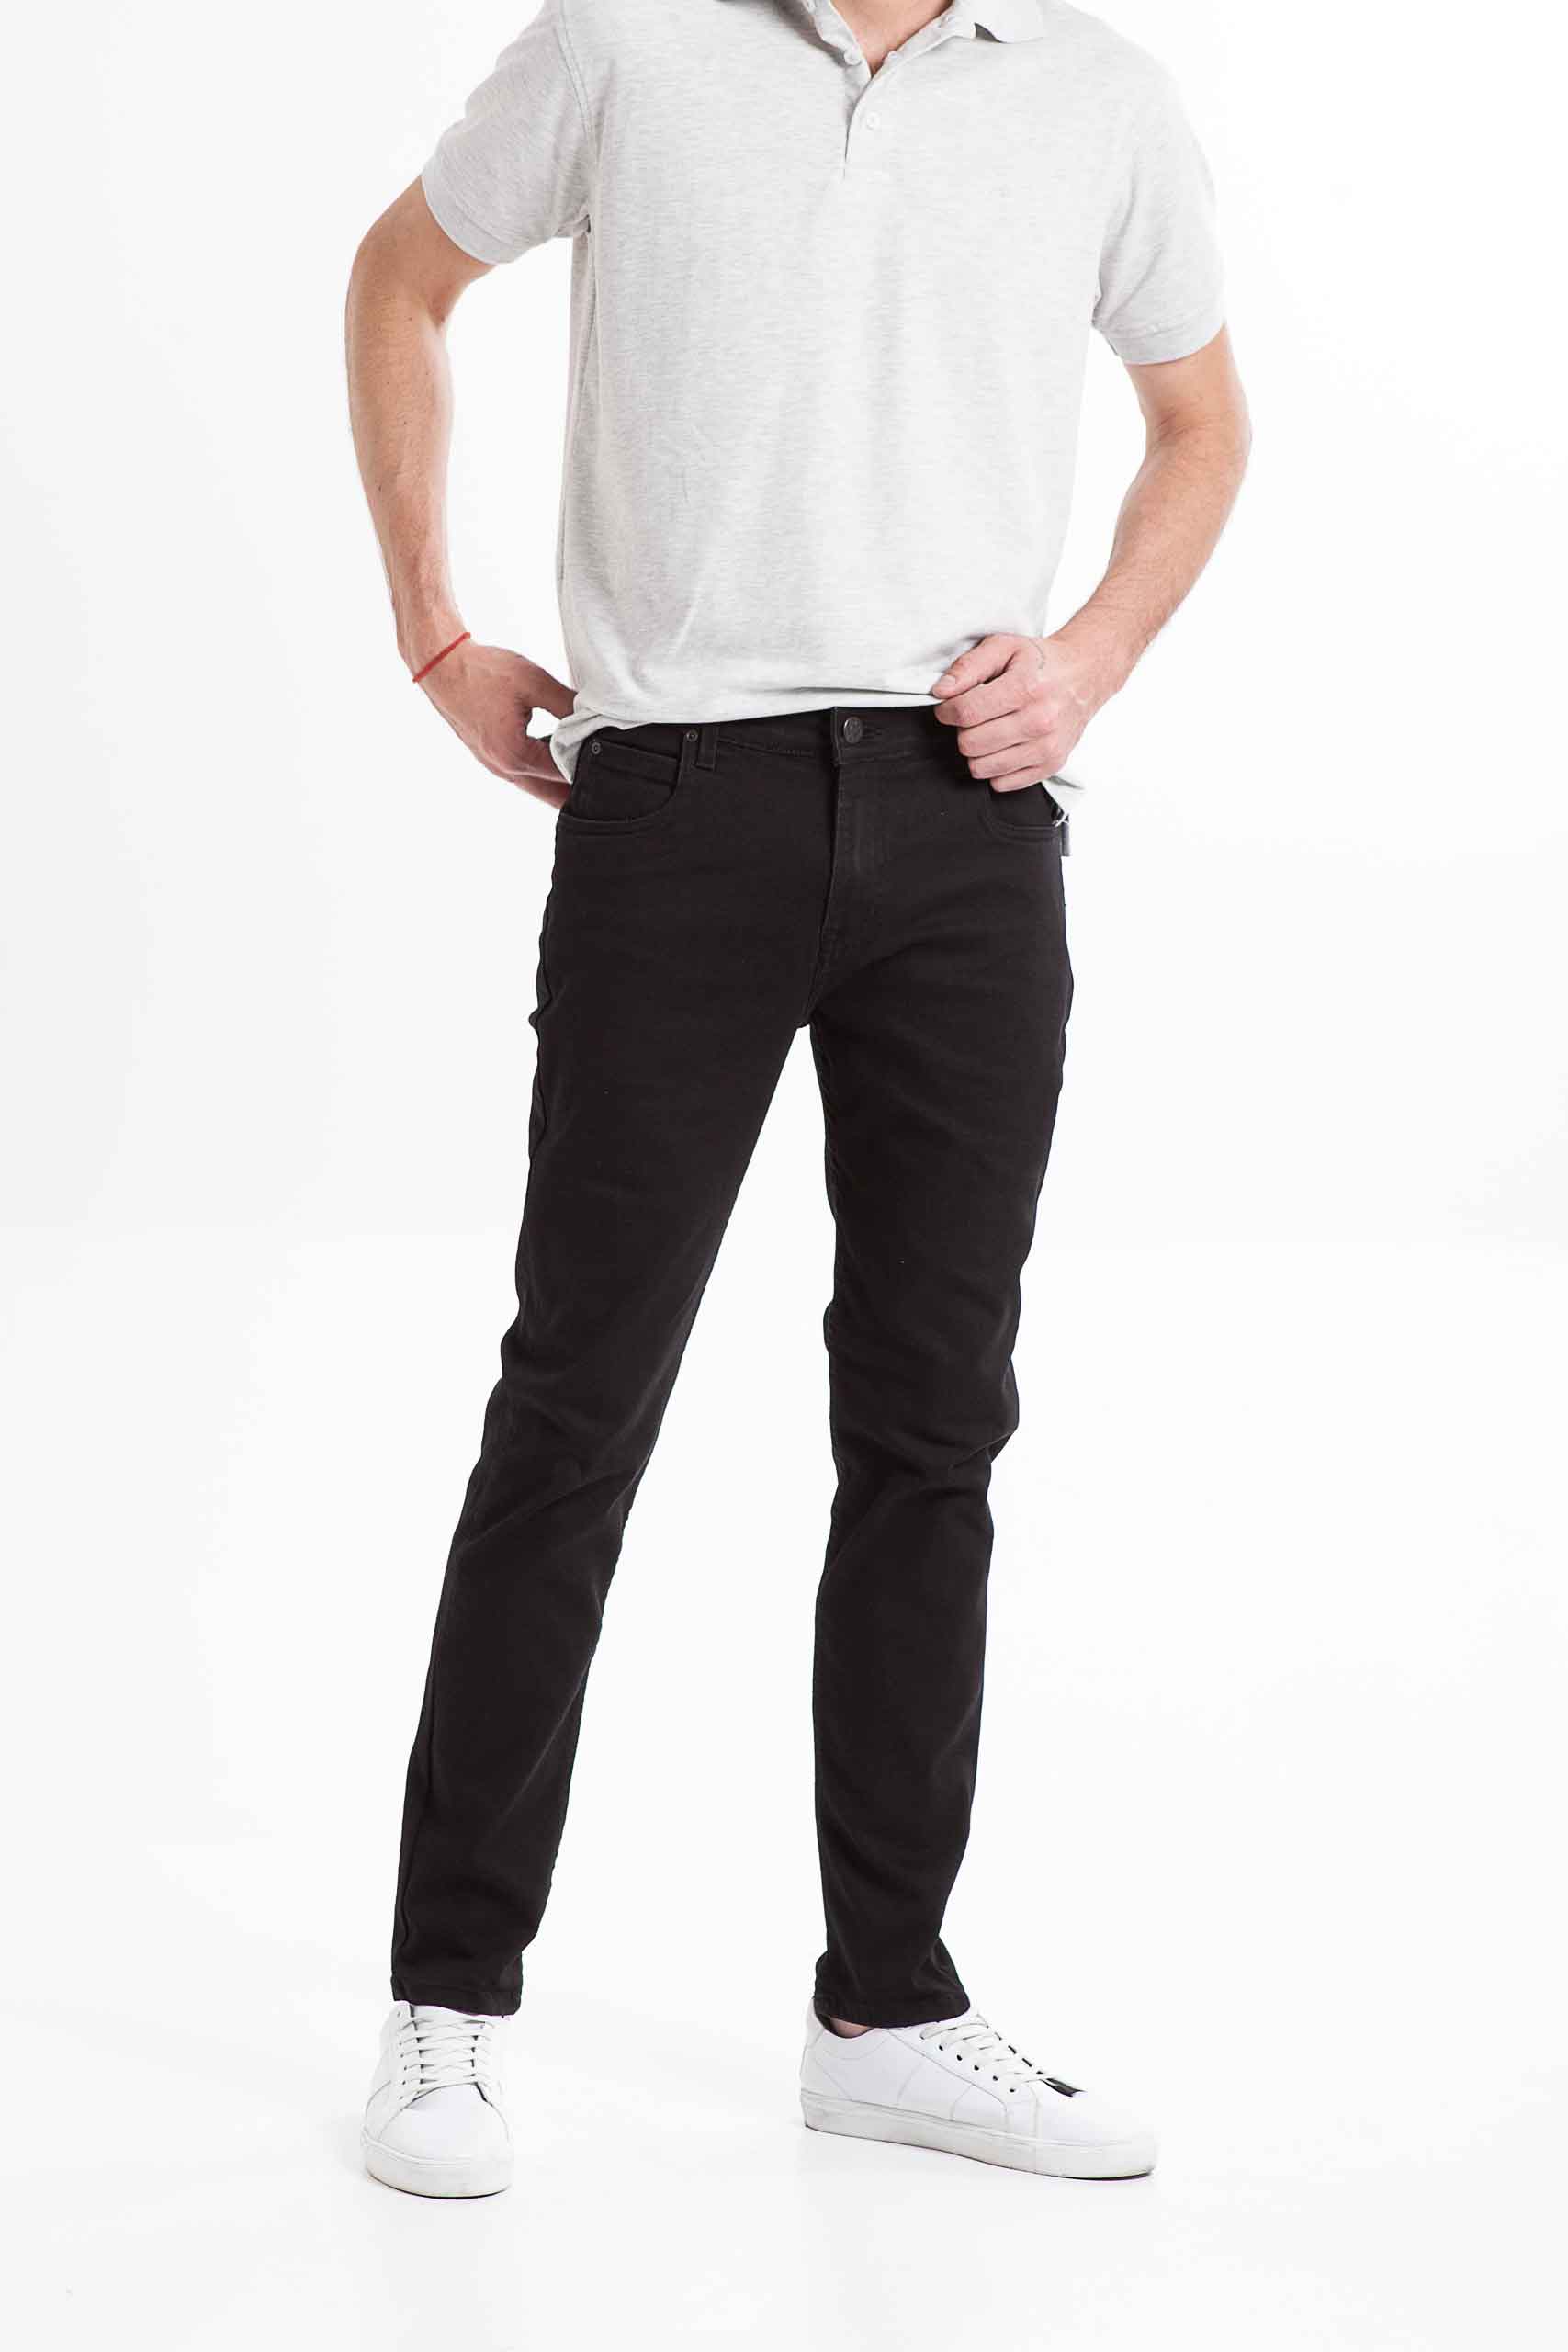 Vista frontal de jean de color negro de marca lee